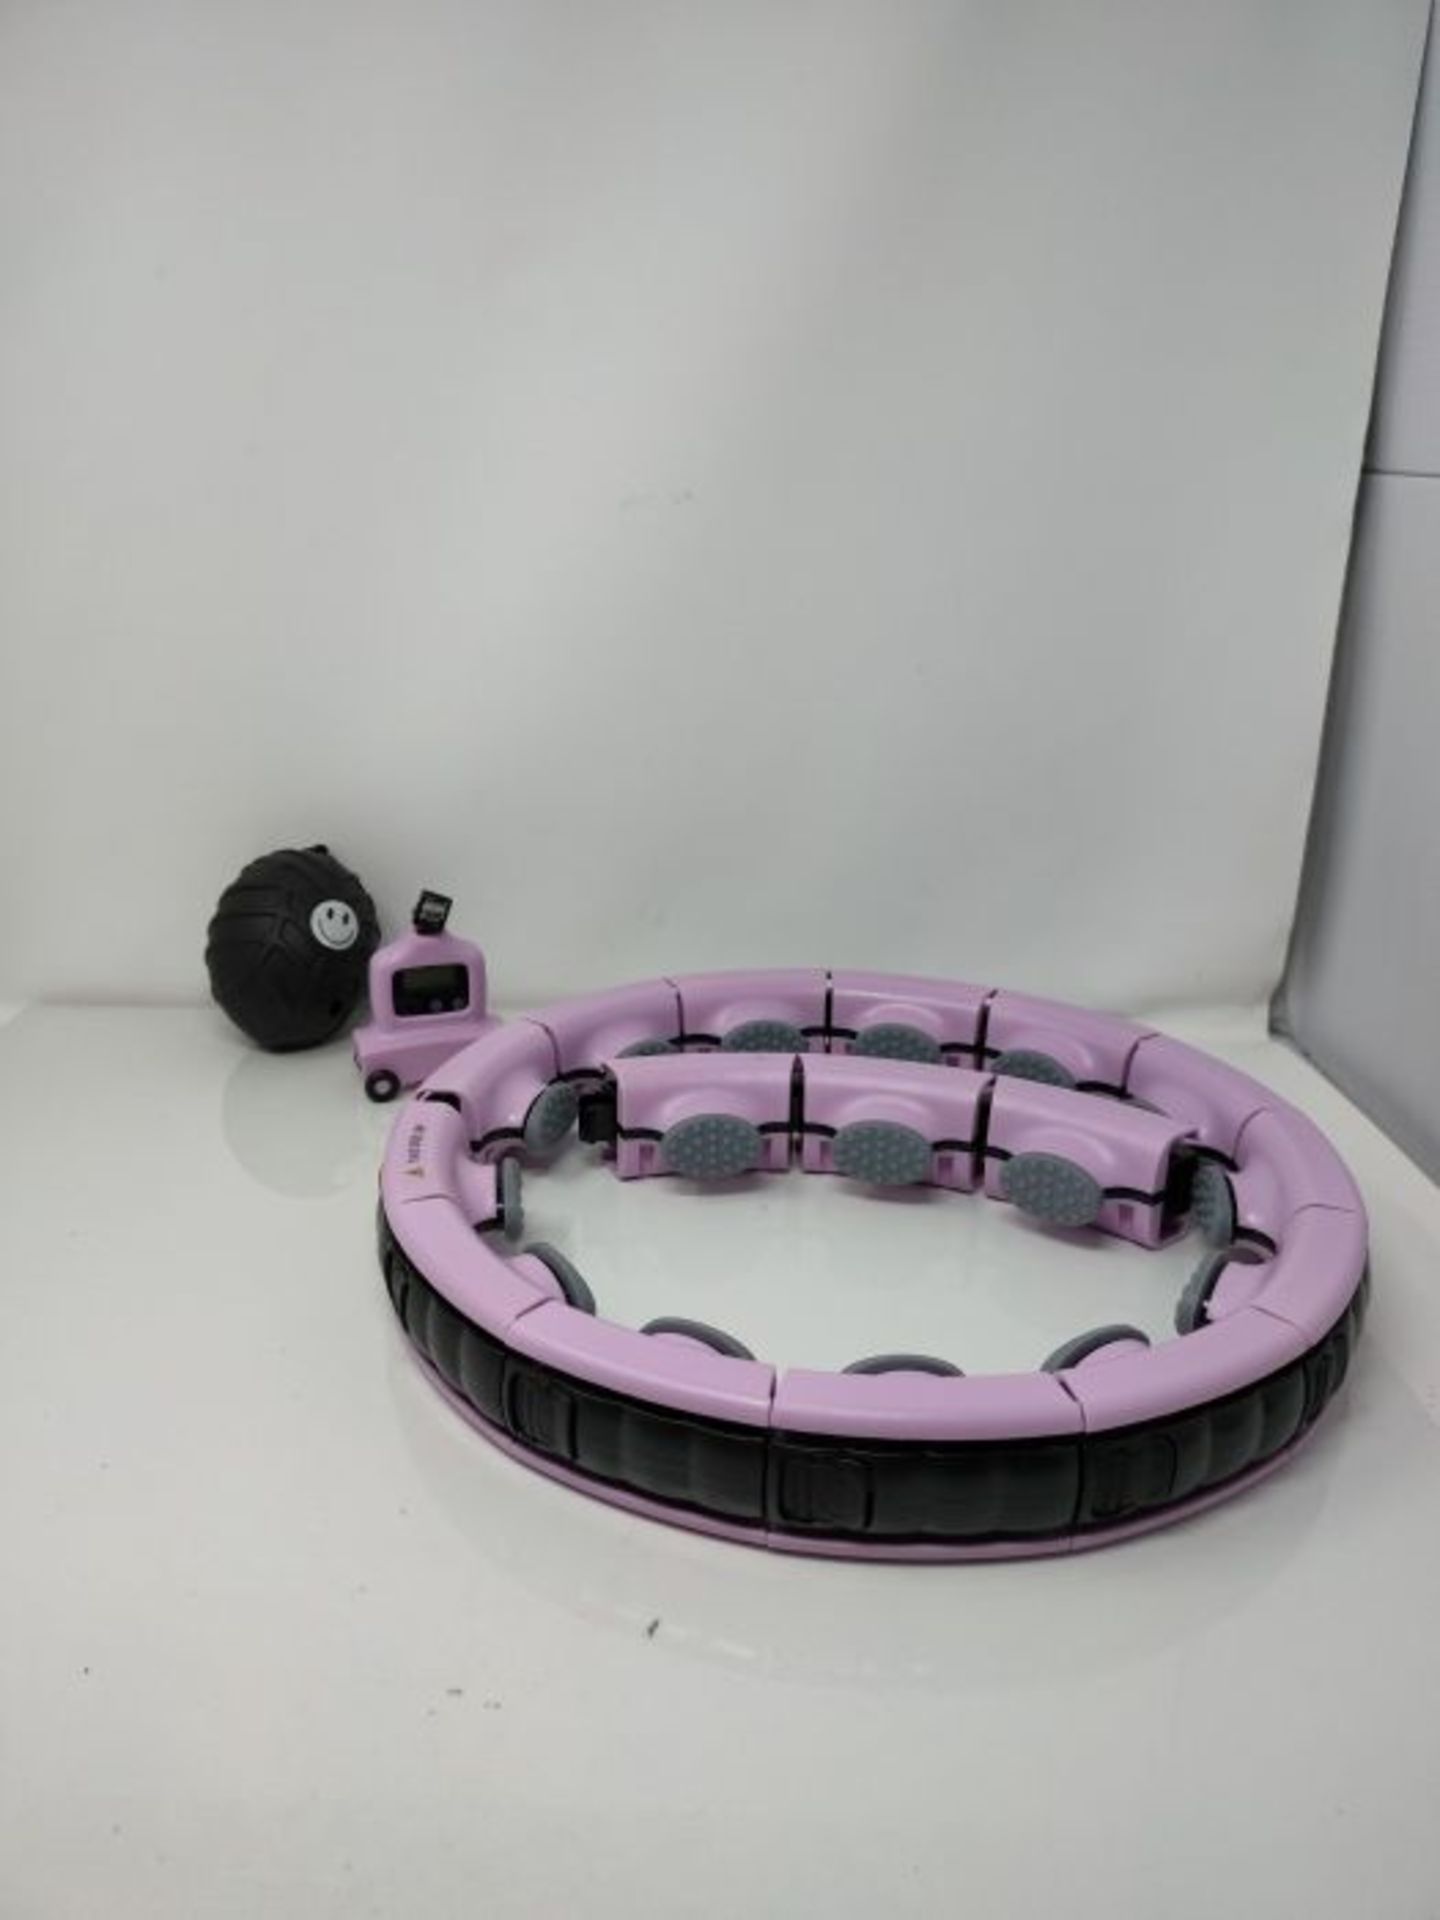 TOPLU Smart Hula Hoop Smart Fitness Hoop Adjustable Hoola Hoop with Gravity Ball, 360? - Image 3 of 3